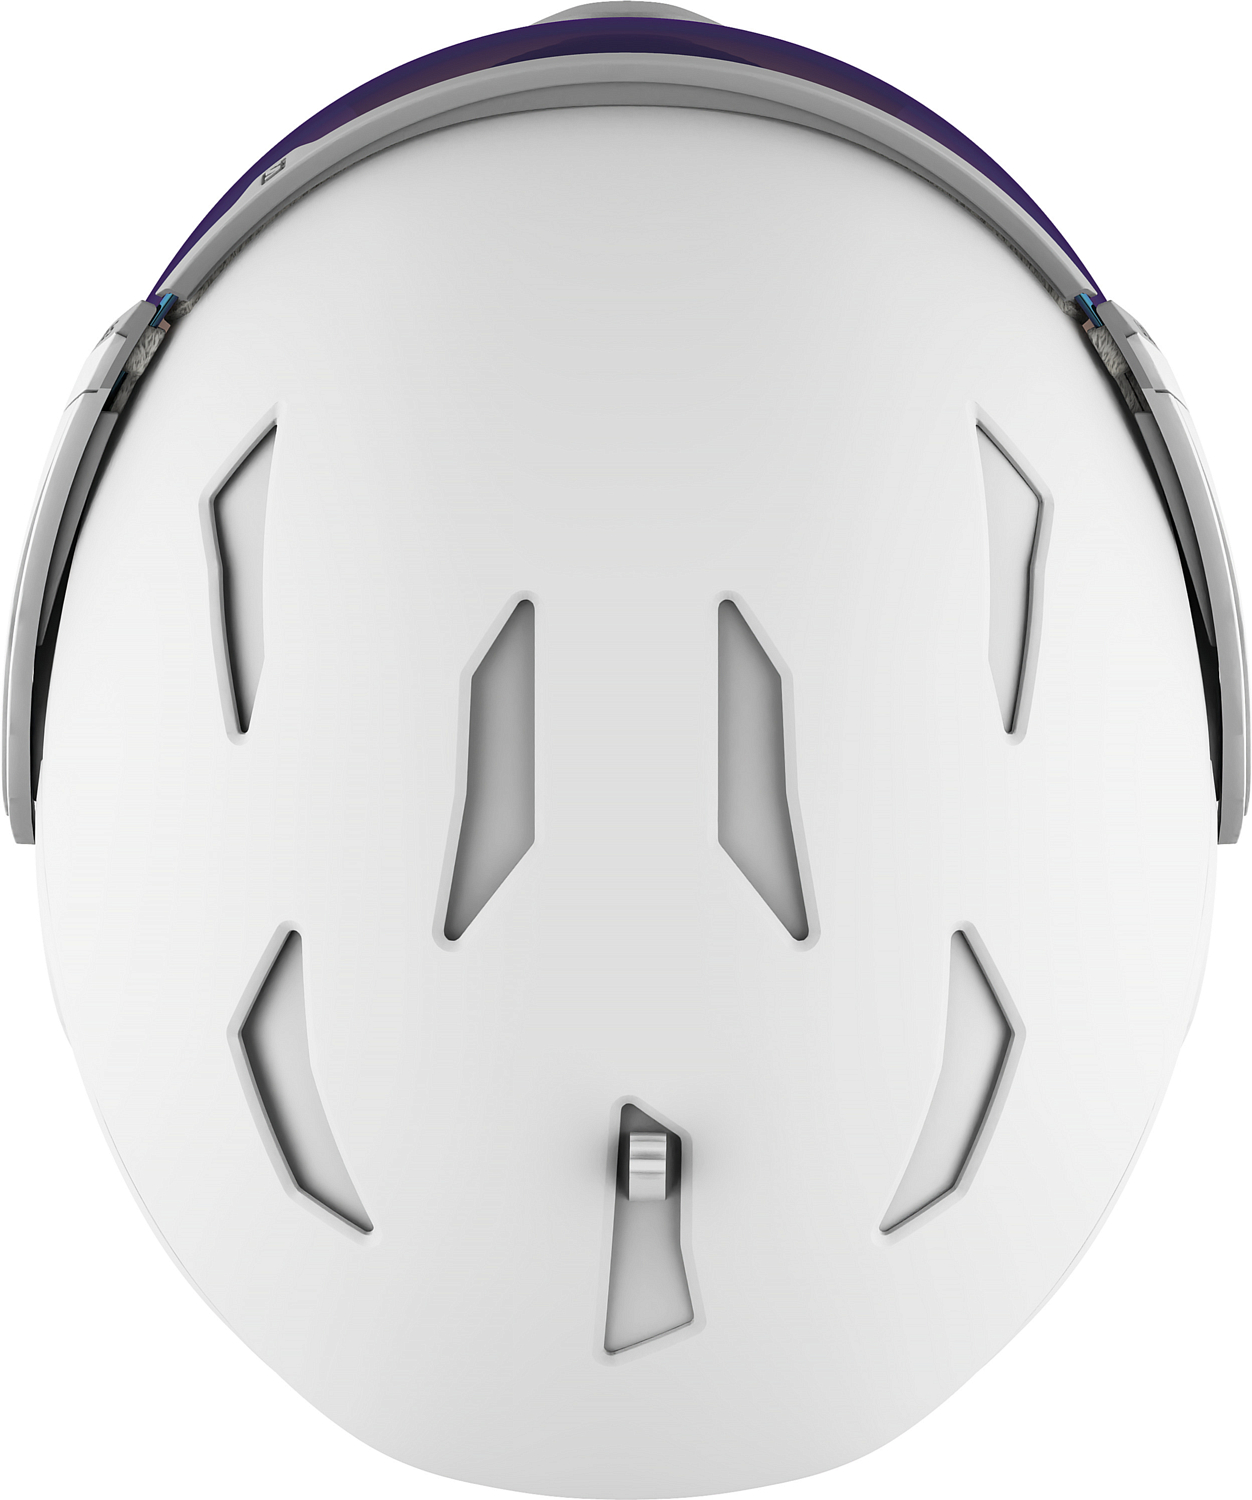 Зимний шлем SALOMON Mirage Photo White Silver/Universalrsal